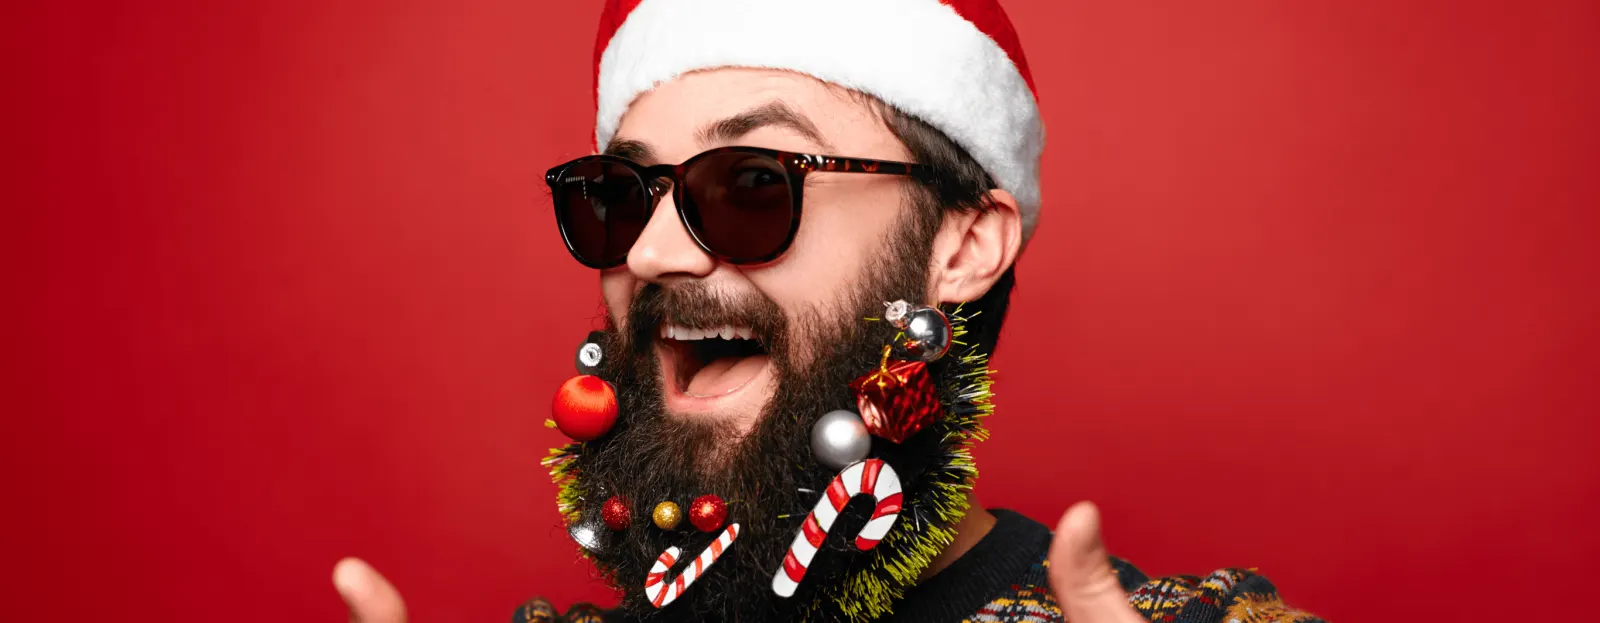 Barba navideña, una tendencia divertida para las fiestas